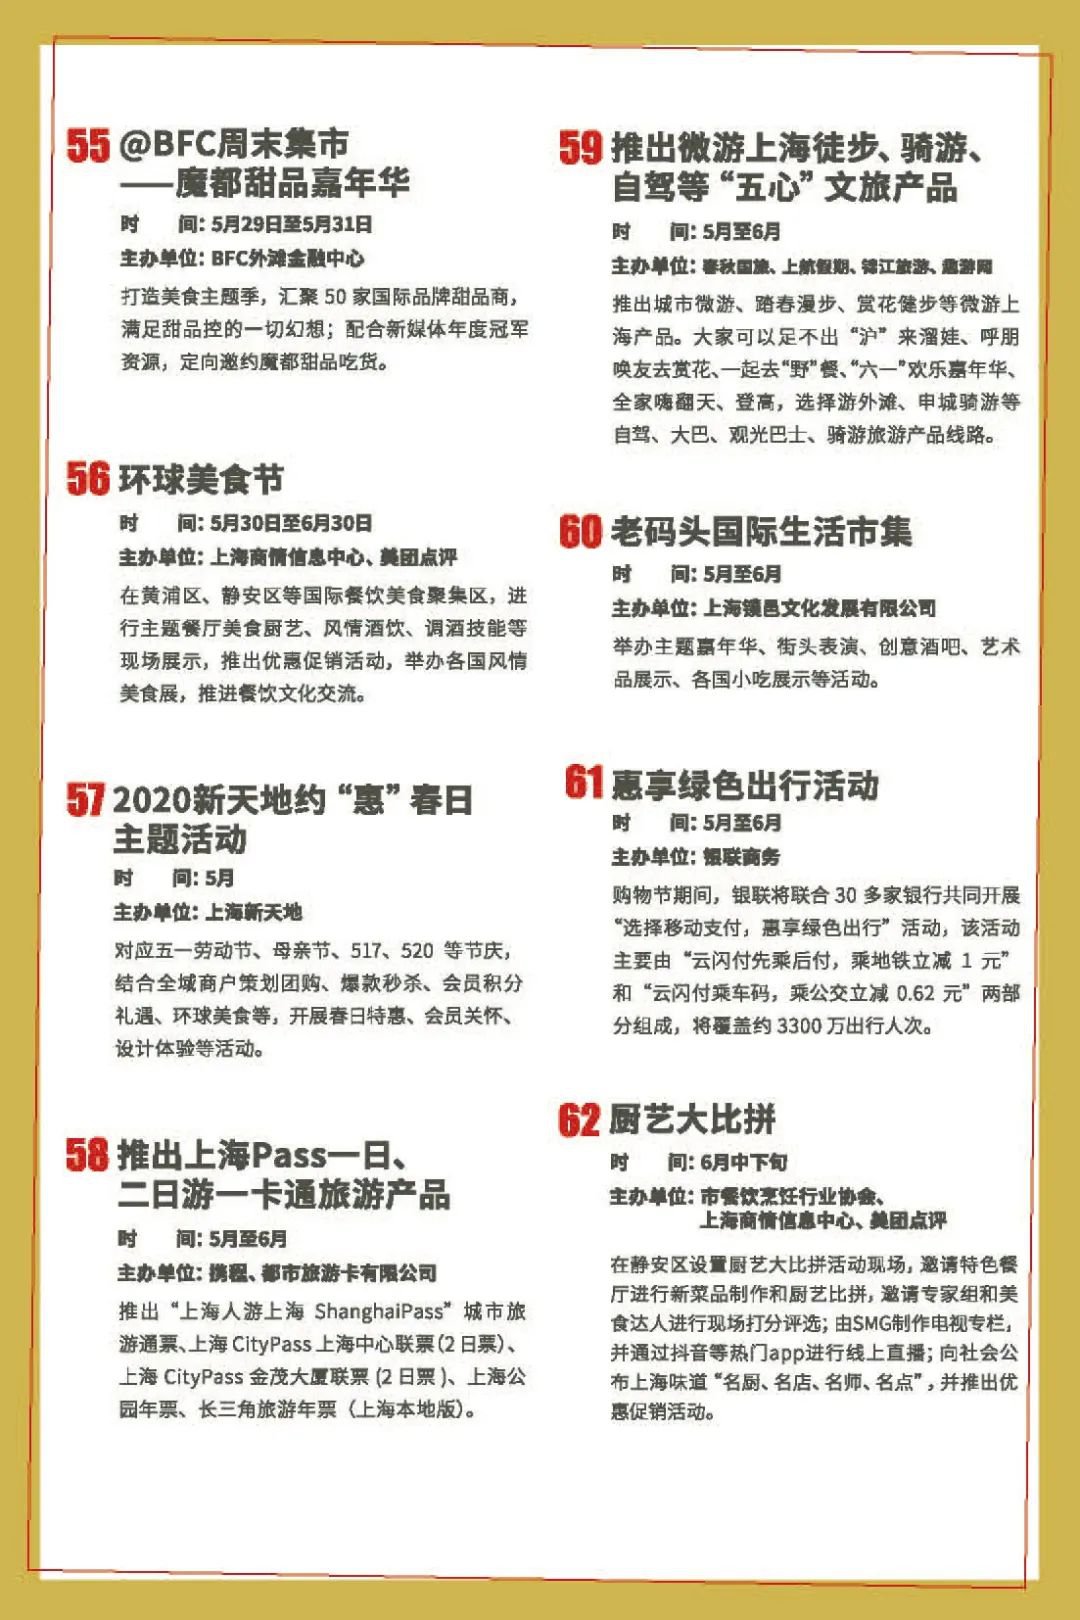 2020上海五五购物节活动安排一览表